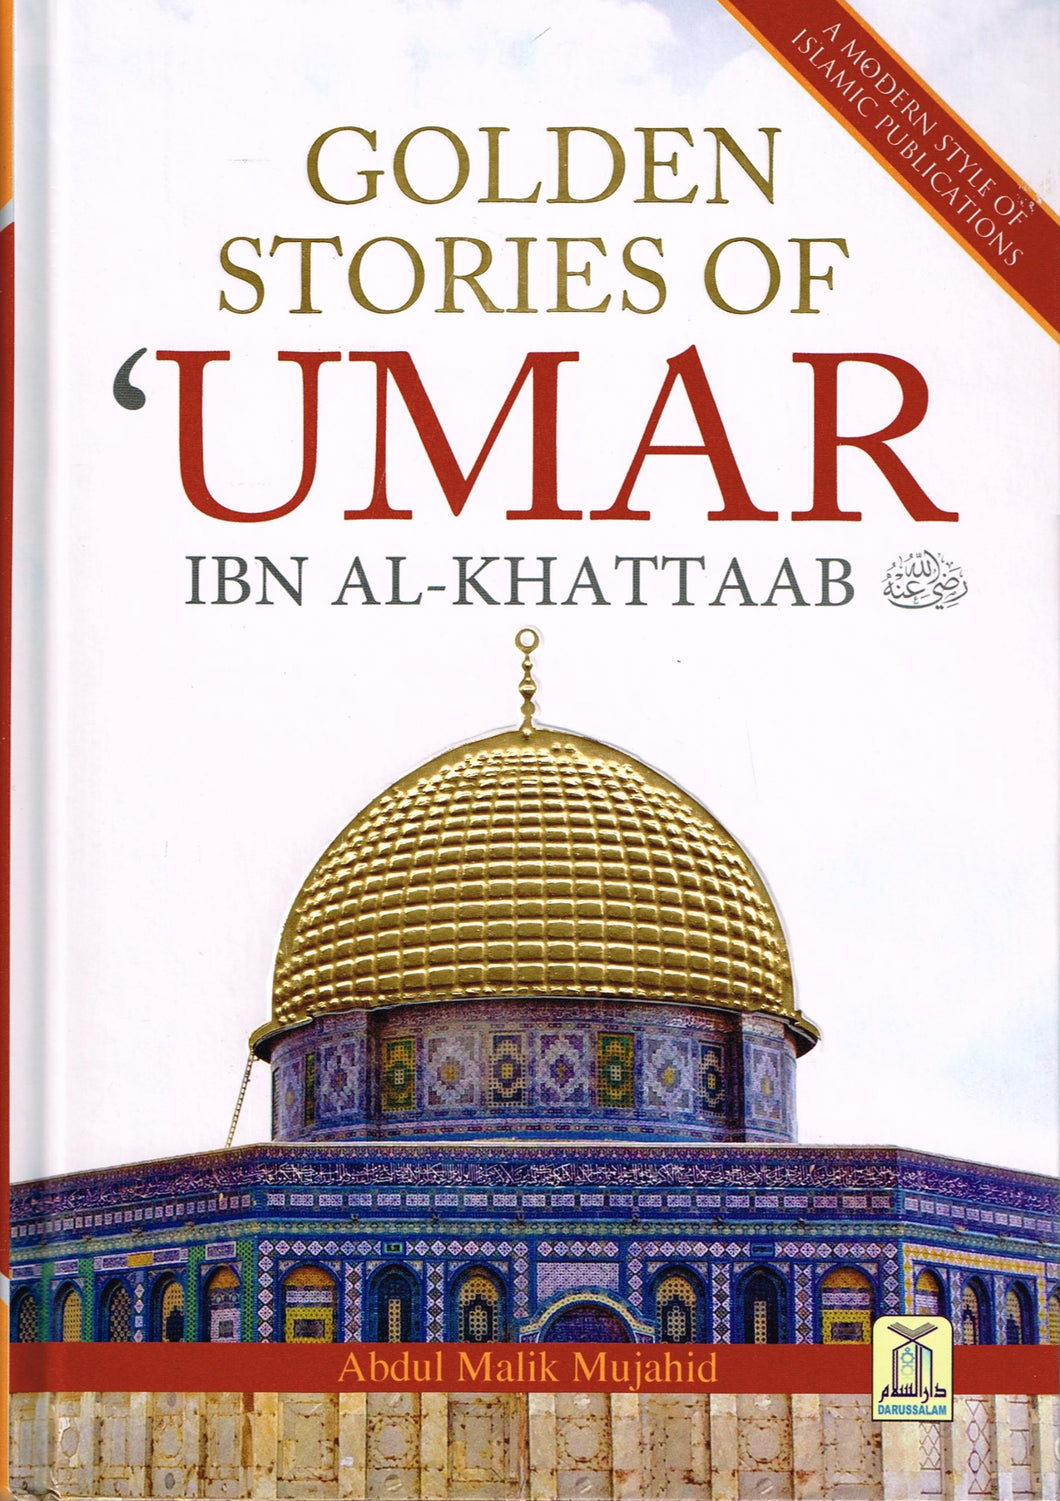 Golden stories of Umar